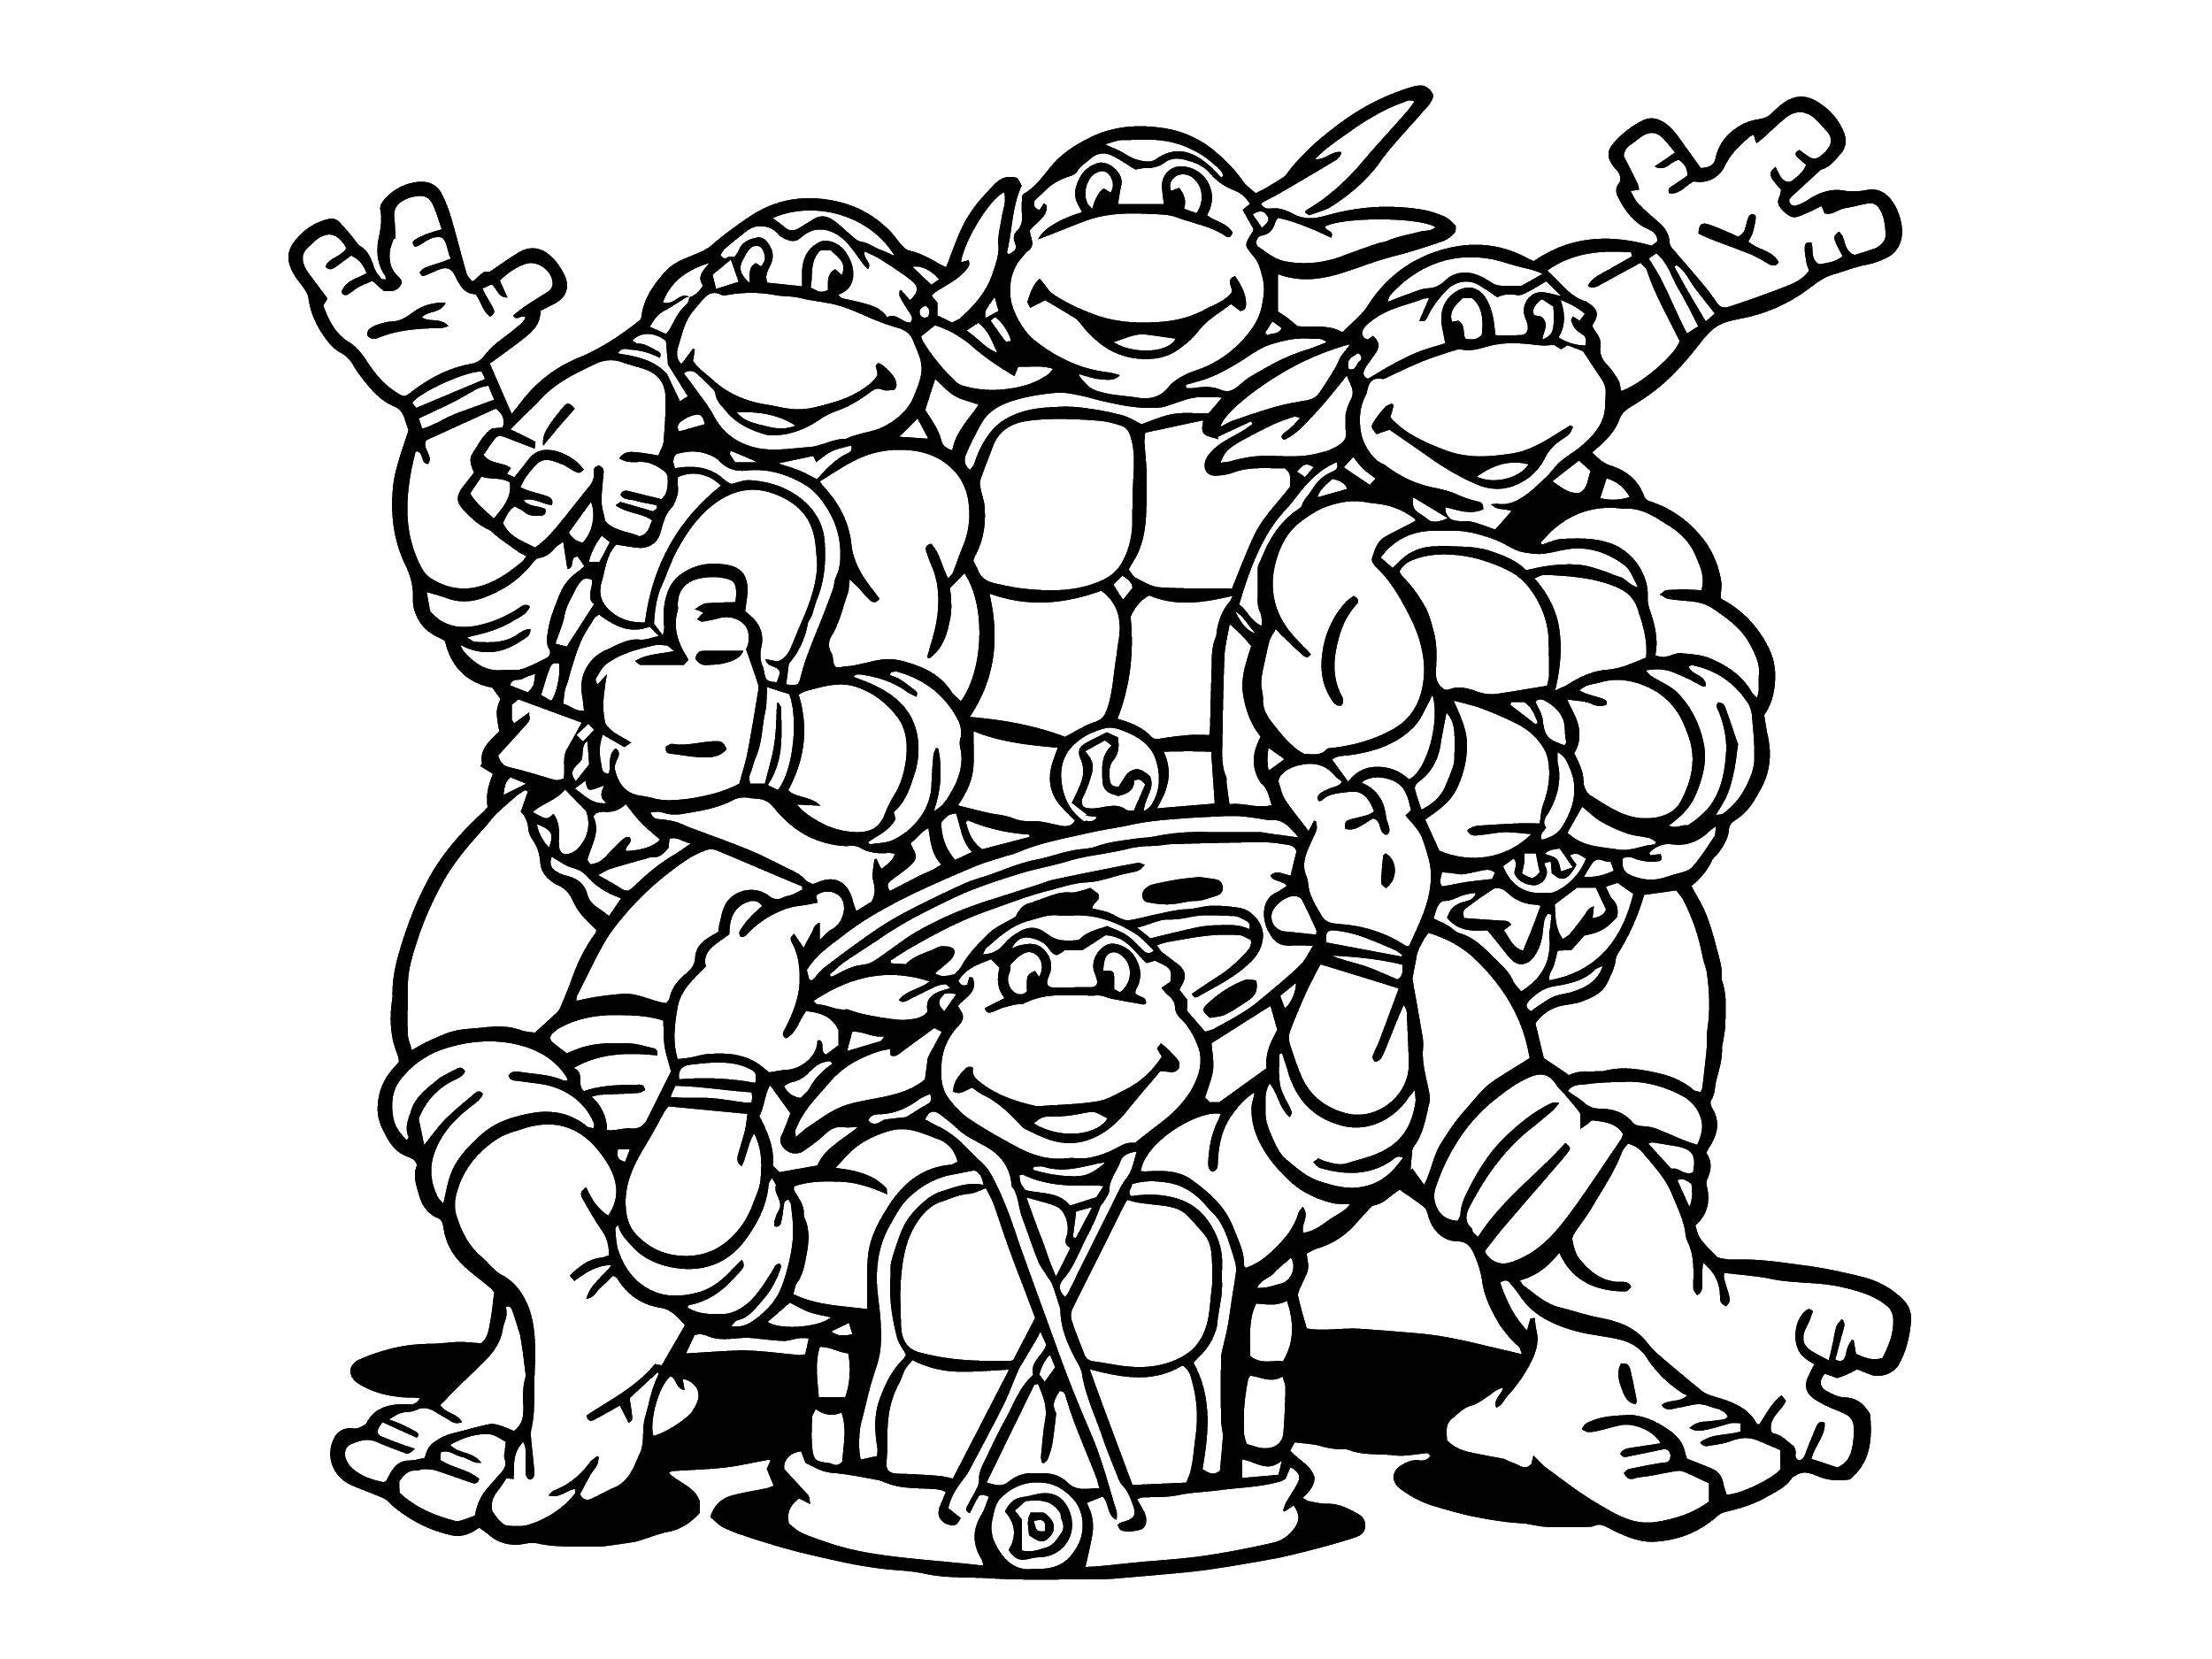 Coloring Teenage mutant ninja turtles and Luke. Category ninja . Tags:  turtles, ninjas, masks.